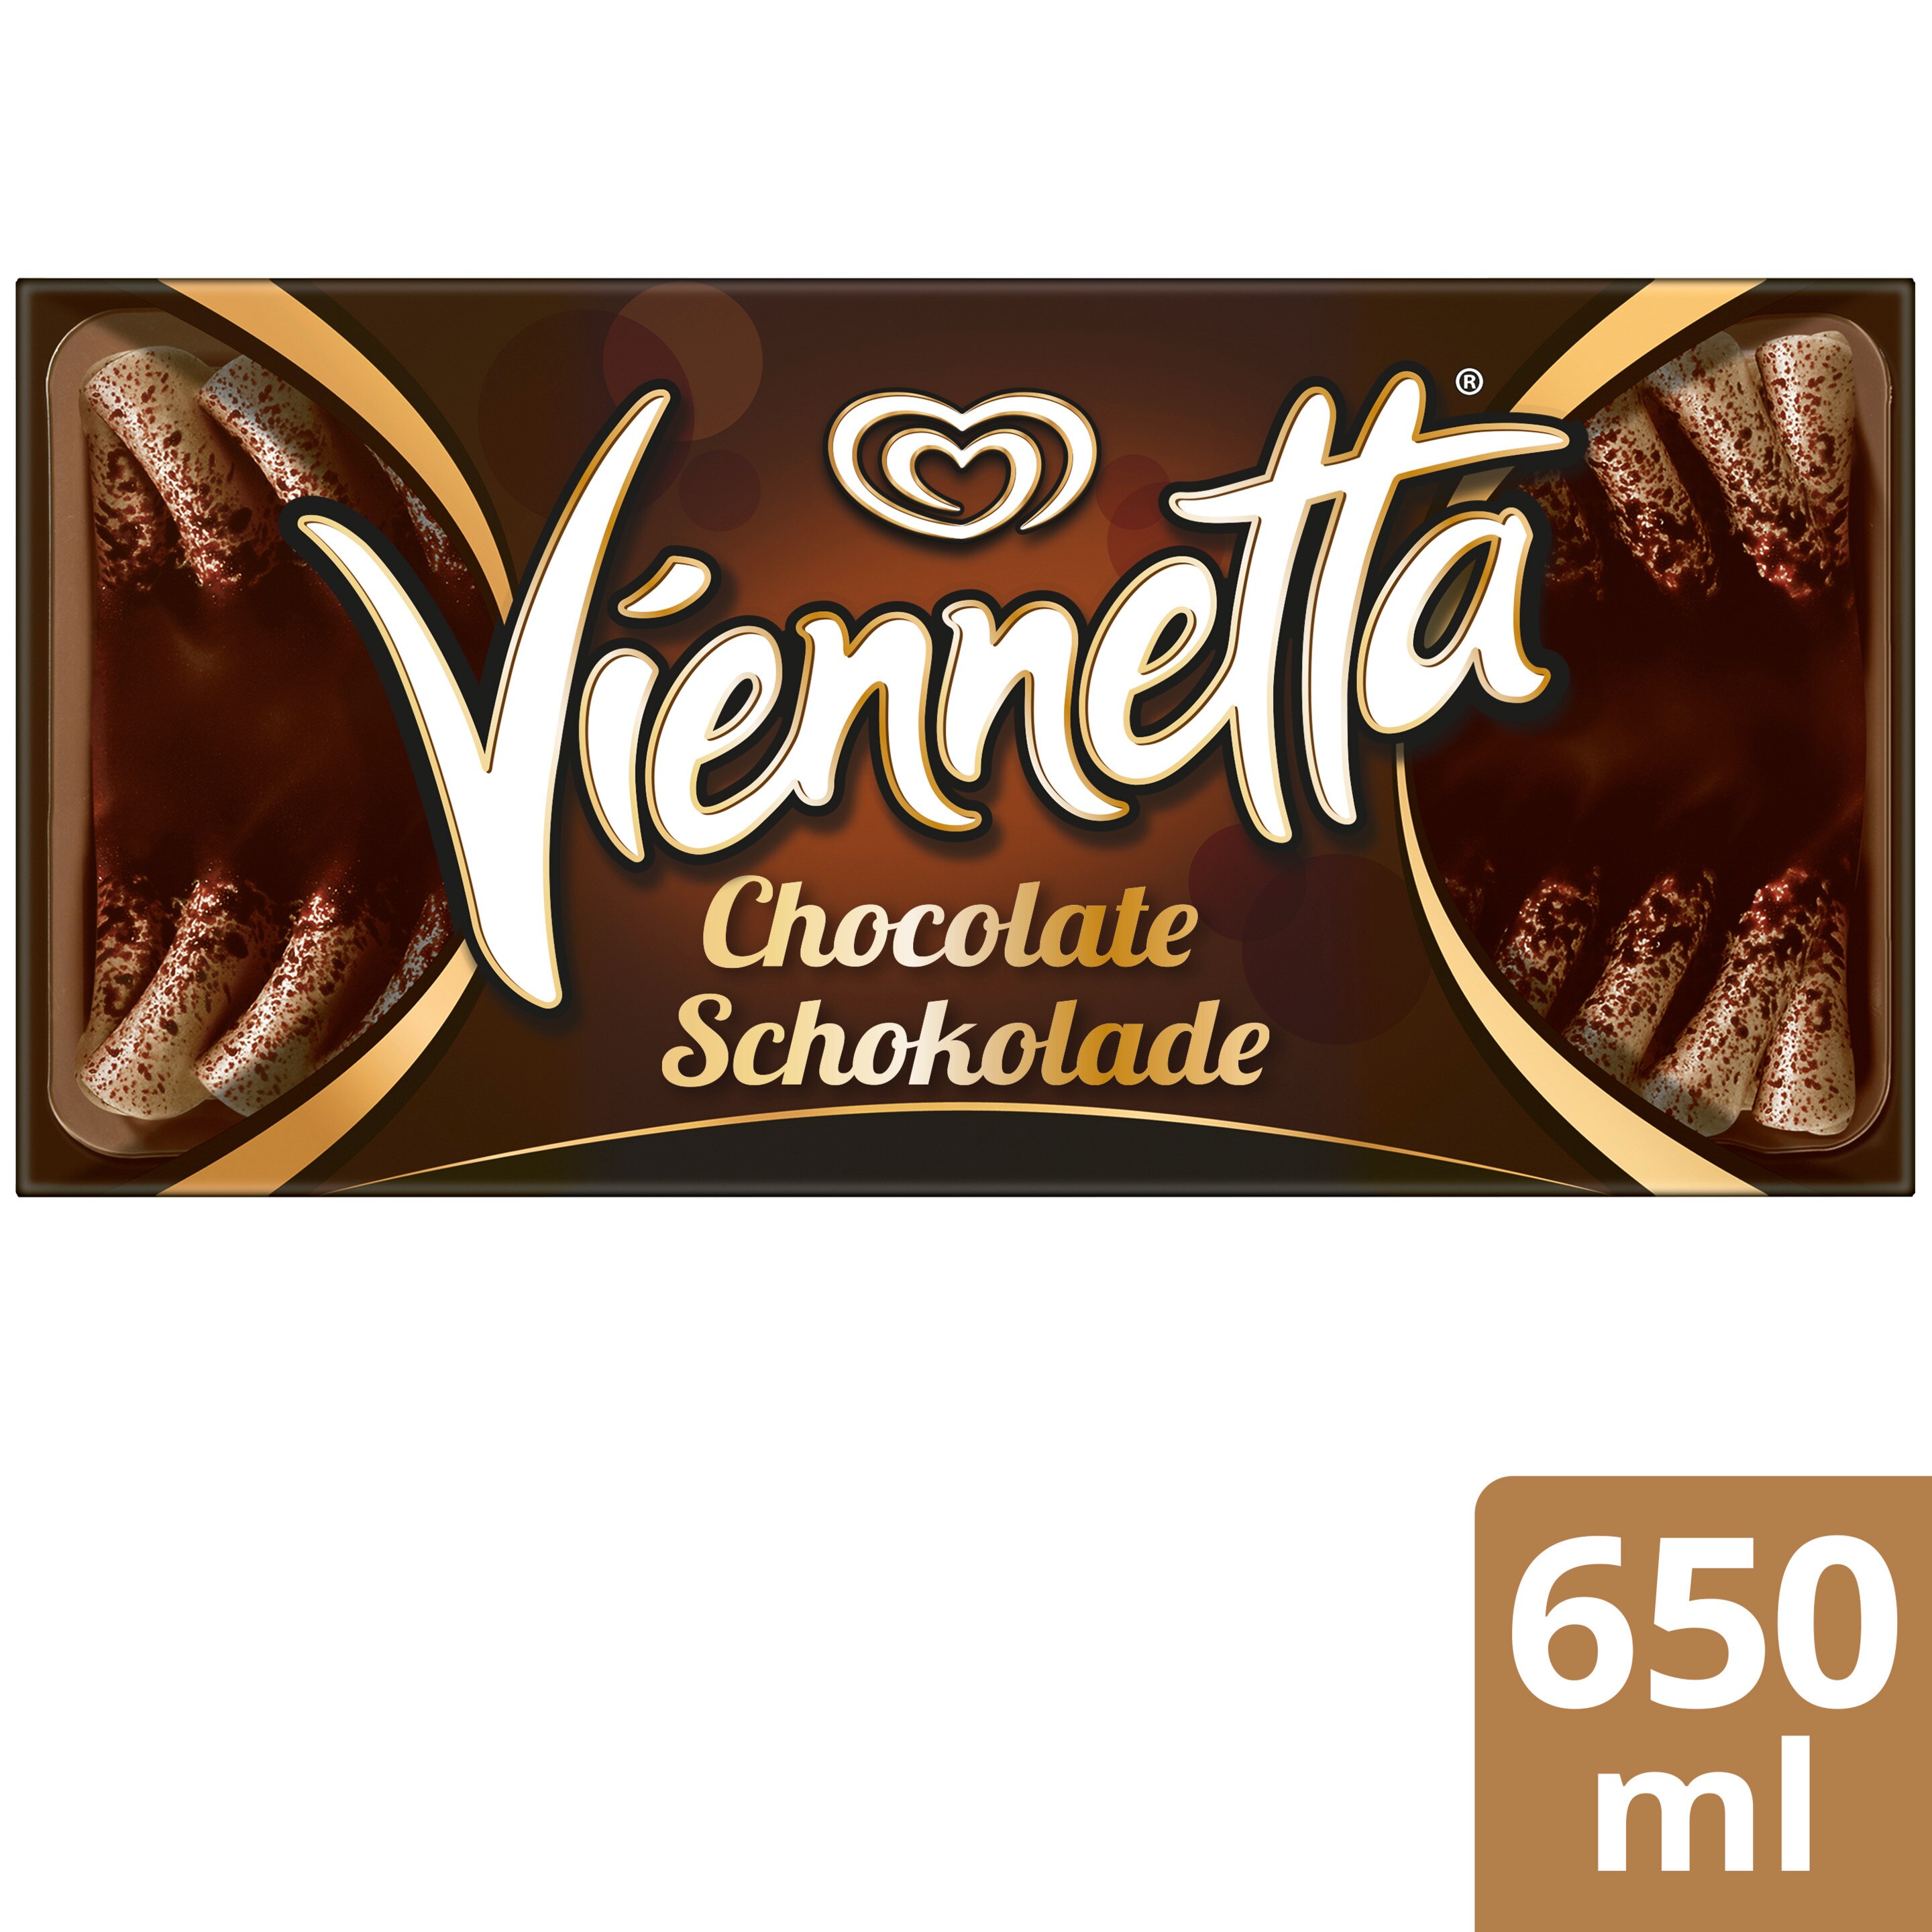 Viennetta Schokolade